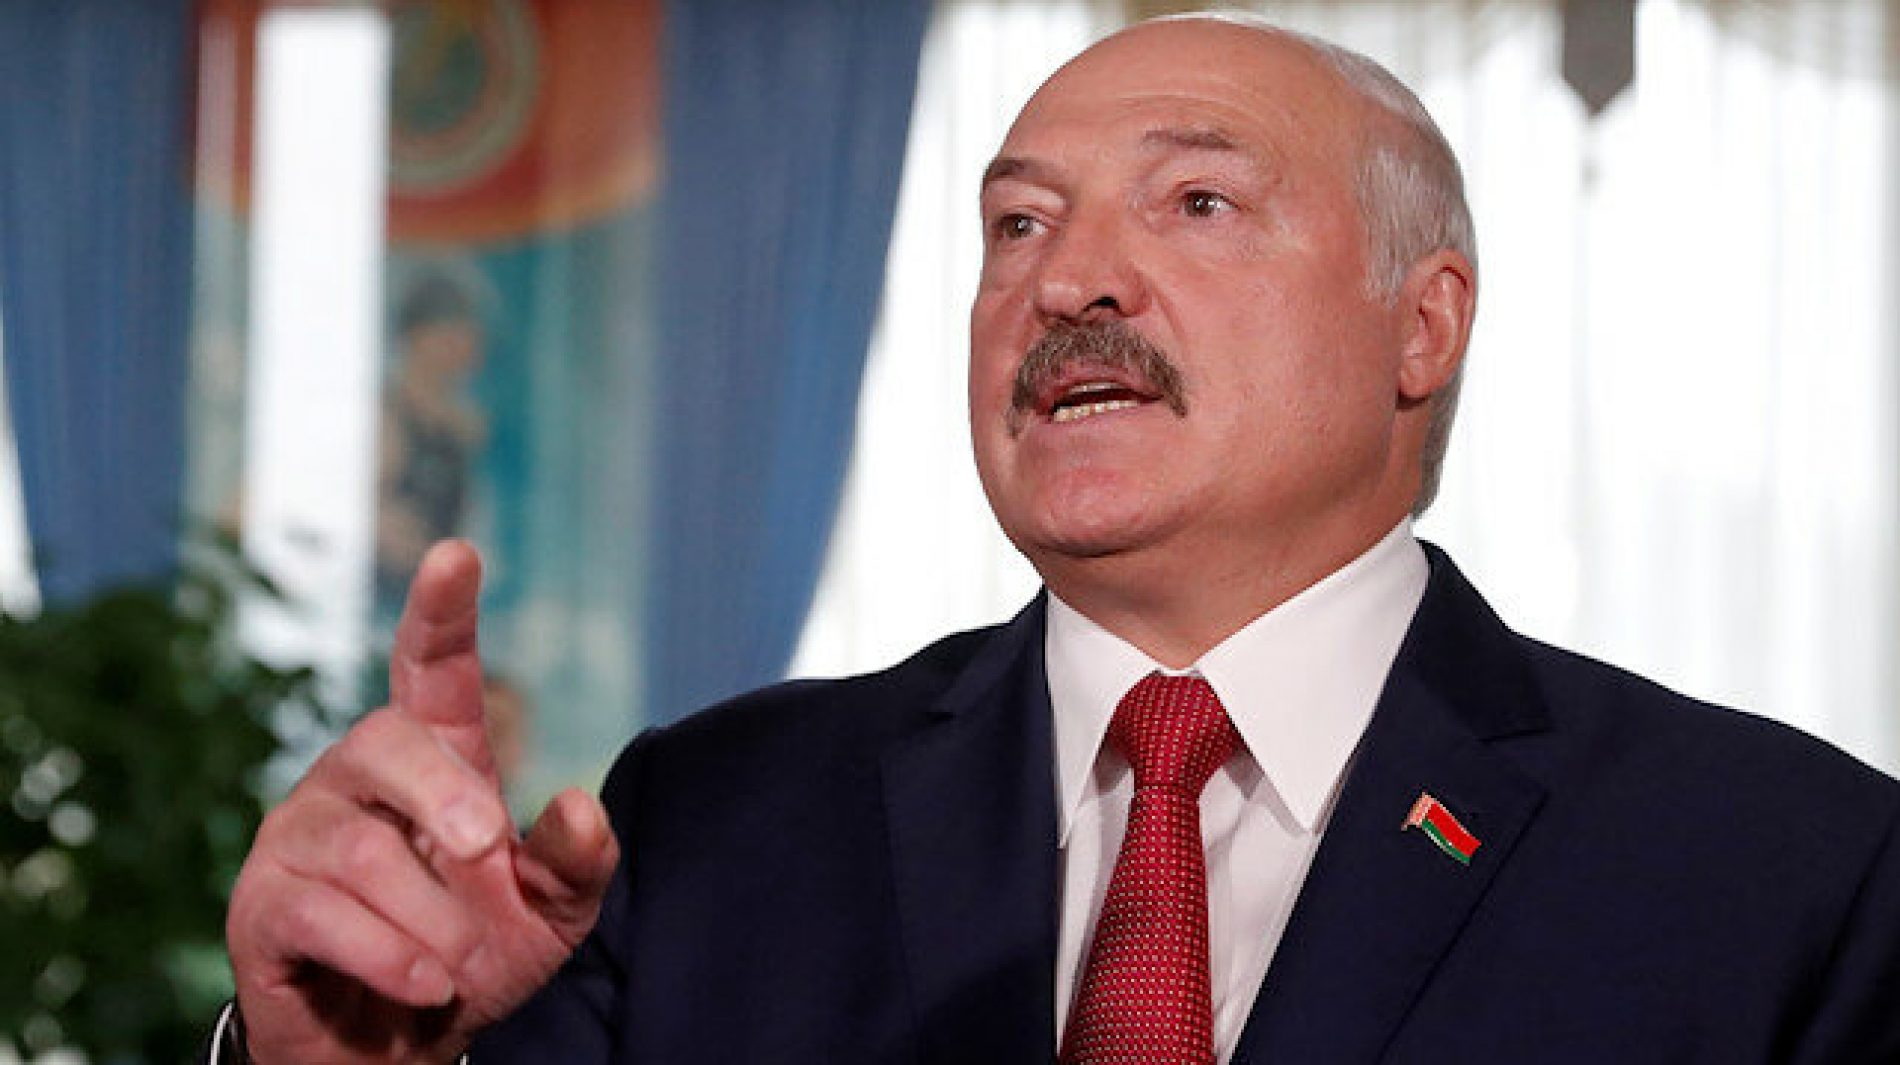 Лукашенко прокомментировал санкции стран Балтии